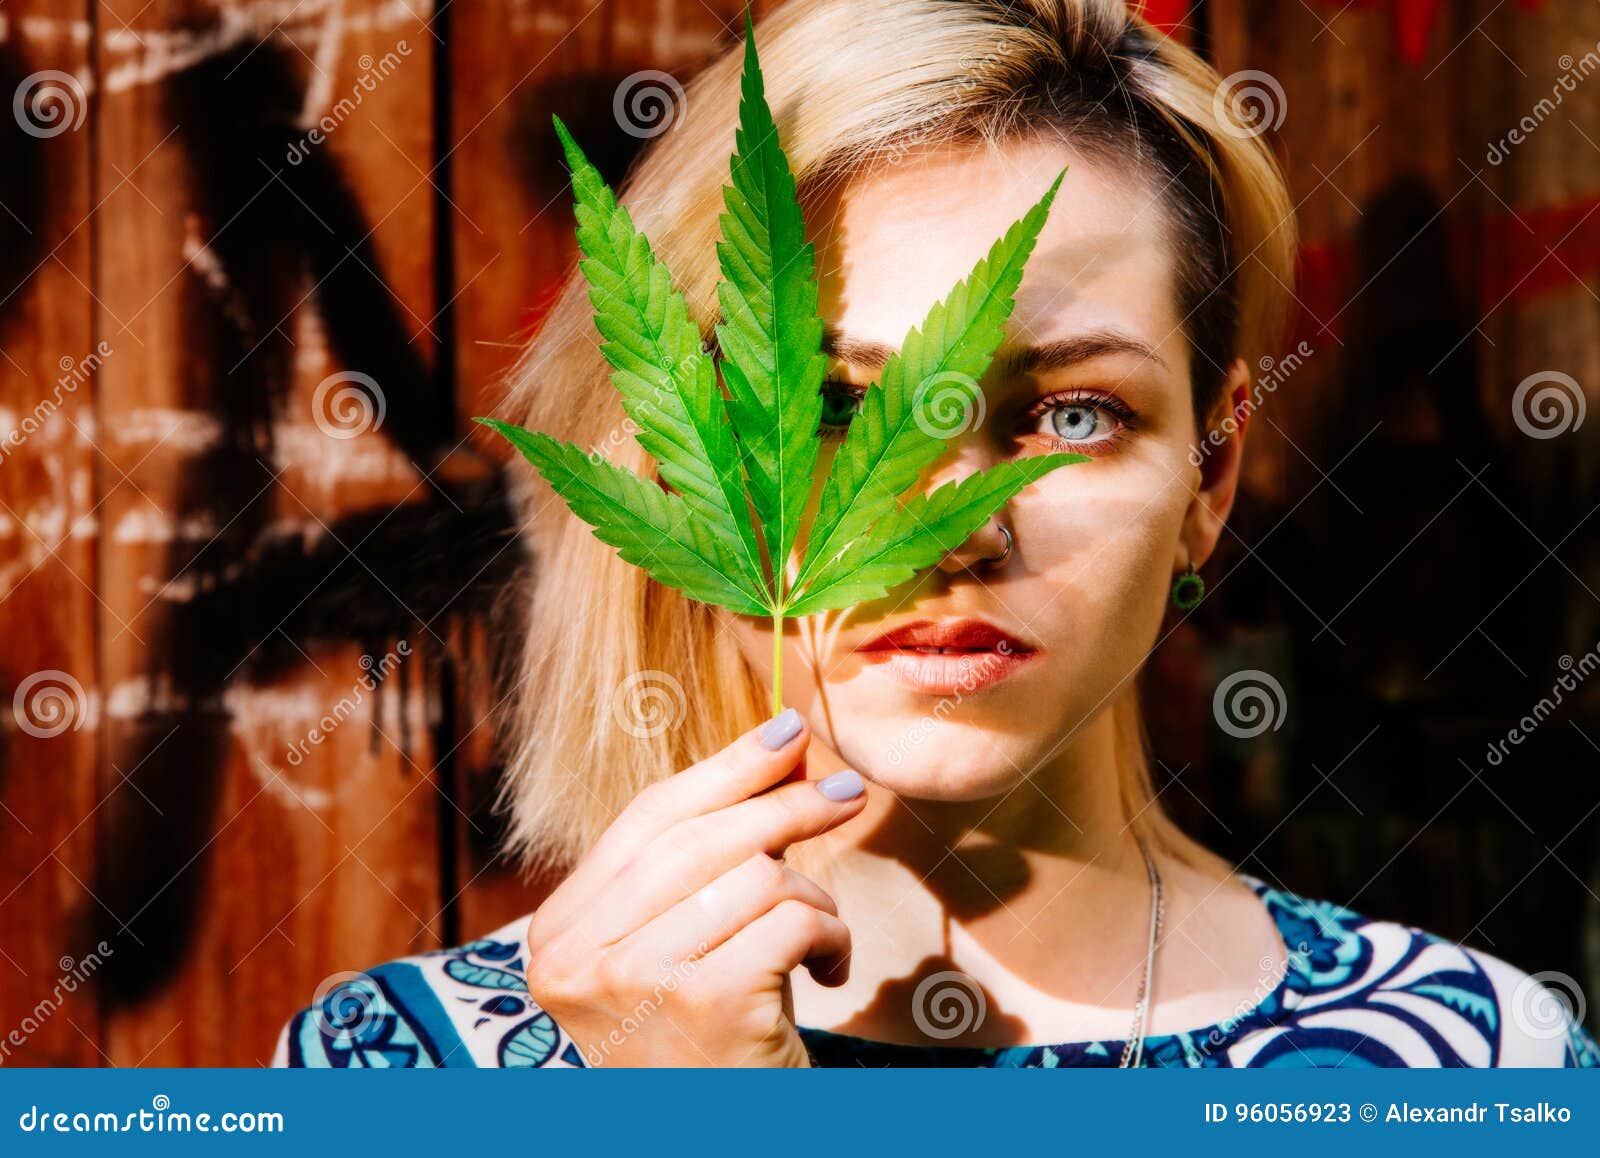 Девка с коноплей семена марихуаны по спб